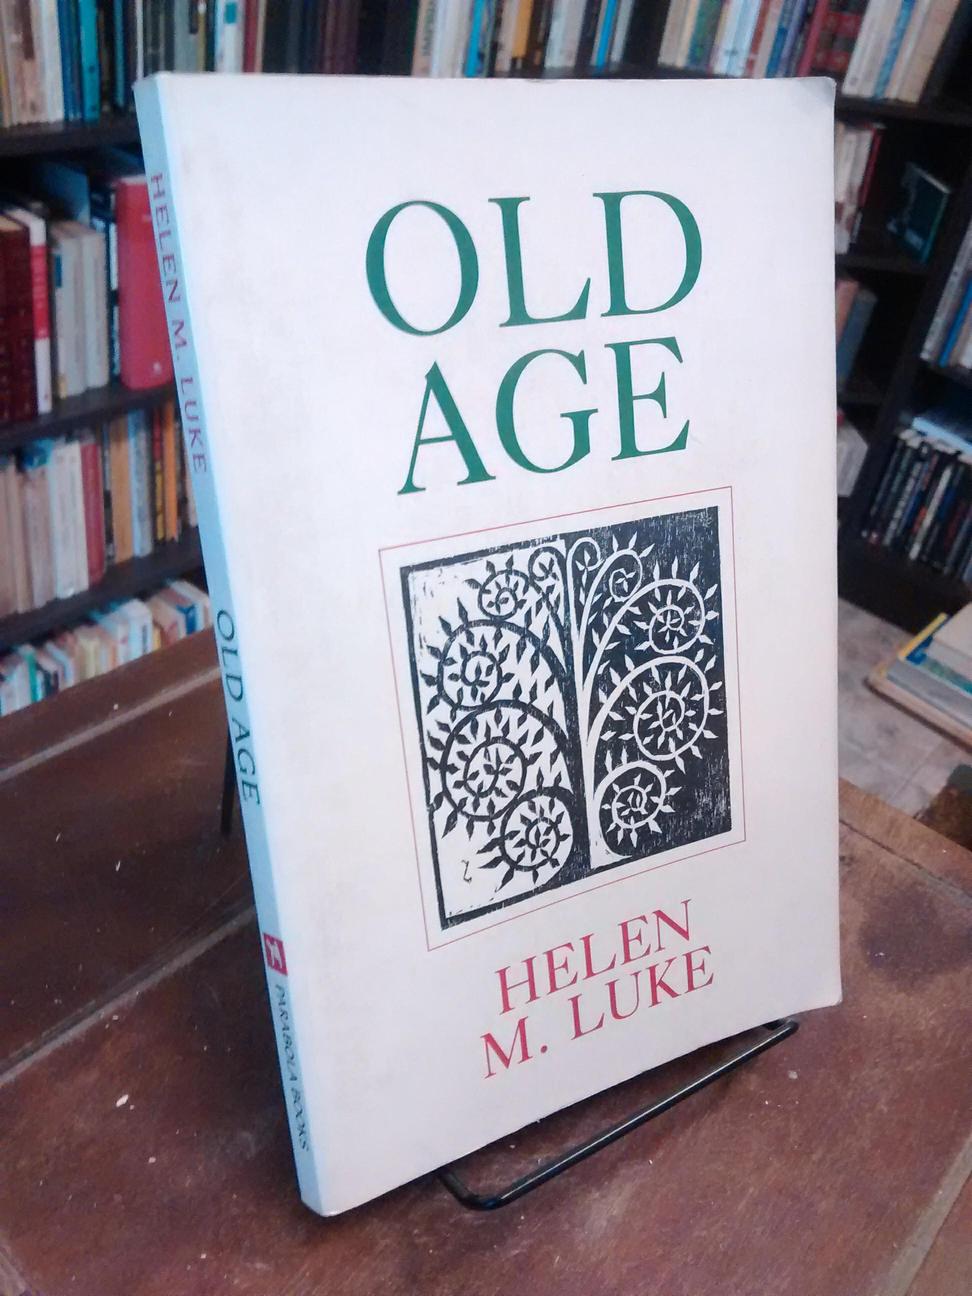 Old Age - Helen M. Luke